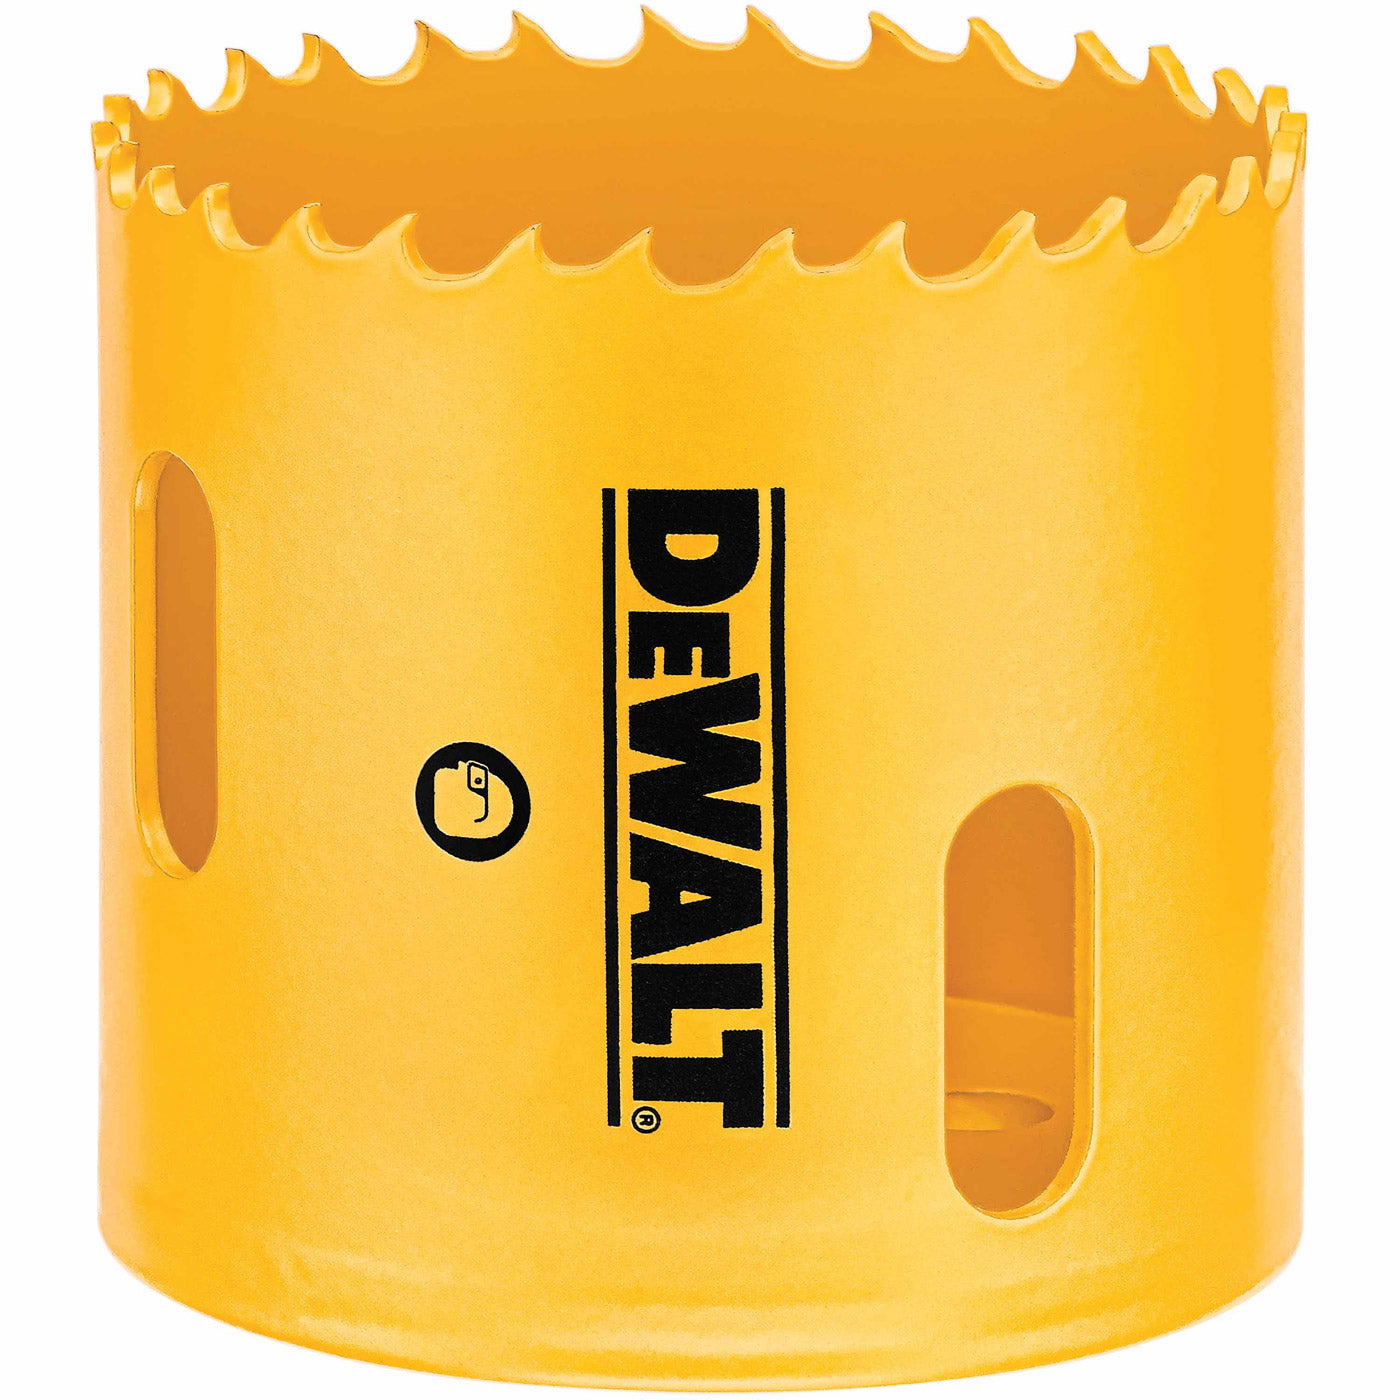 DeWalt D180028 1-3/4" (44mm) Bi-Metal Hole Saw